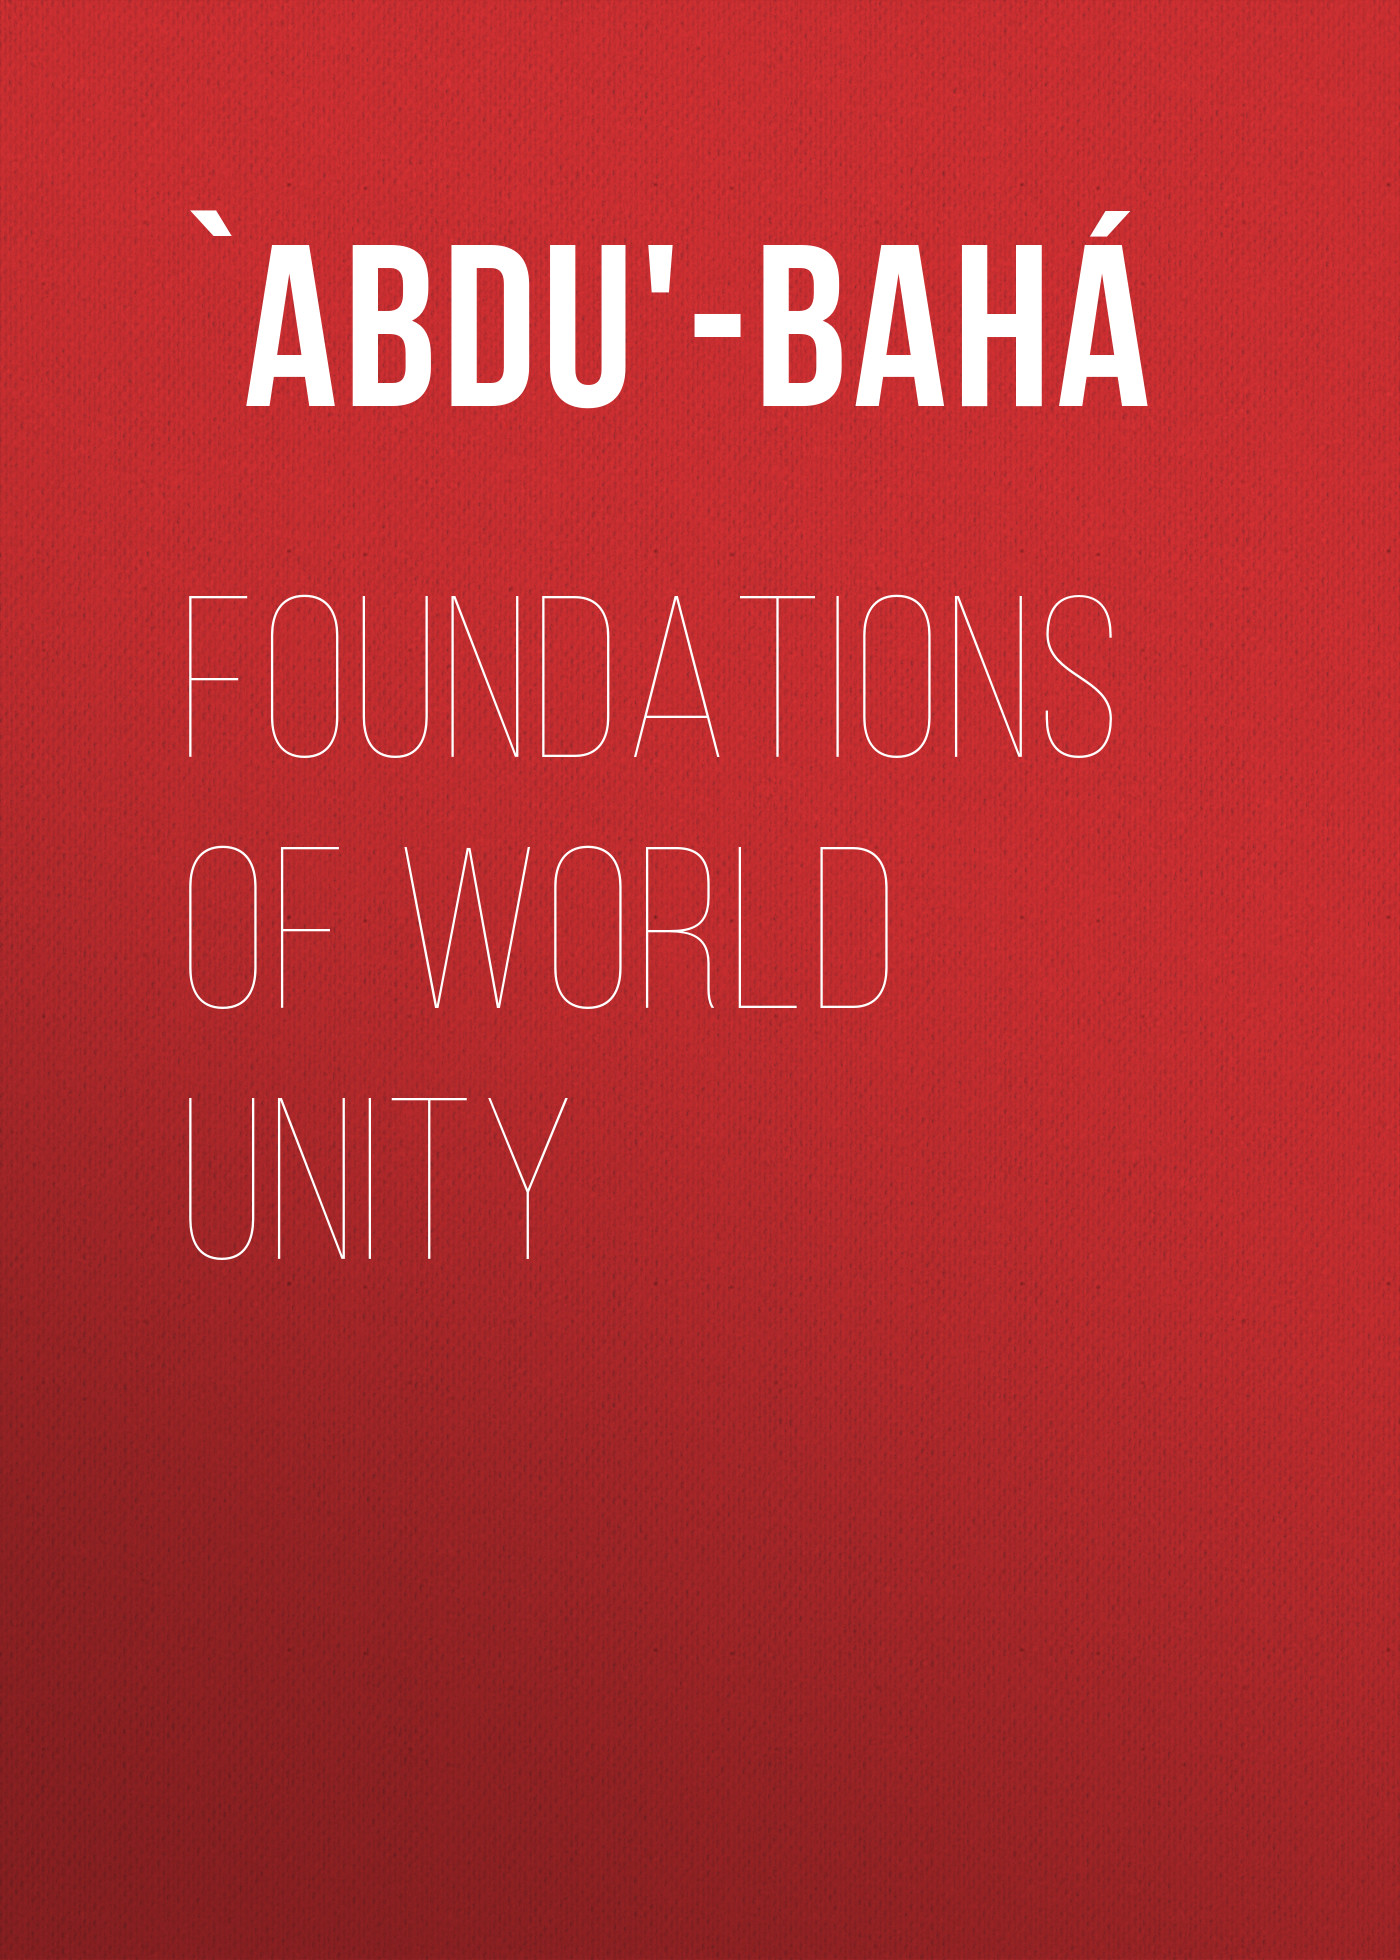 Книга Foundations of World Unity из серии , созданная  `Abdu'-Bahá, может относится к жанру Зарубежная классика, Зарубежная эзотерическая и религиозная литература, Философия, Ужасы и Мистика, Зарубежная психология. Стоимость электронной книги Foundations of World Unity с идентификатором 36367206 составляет 0 руб.